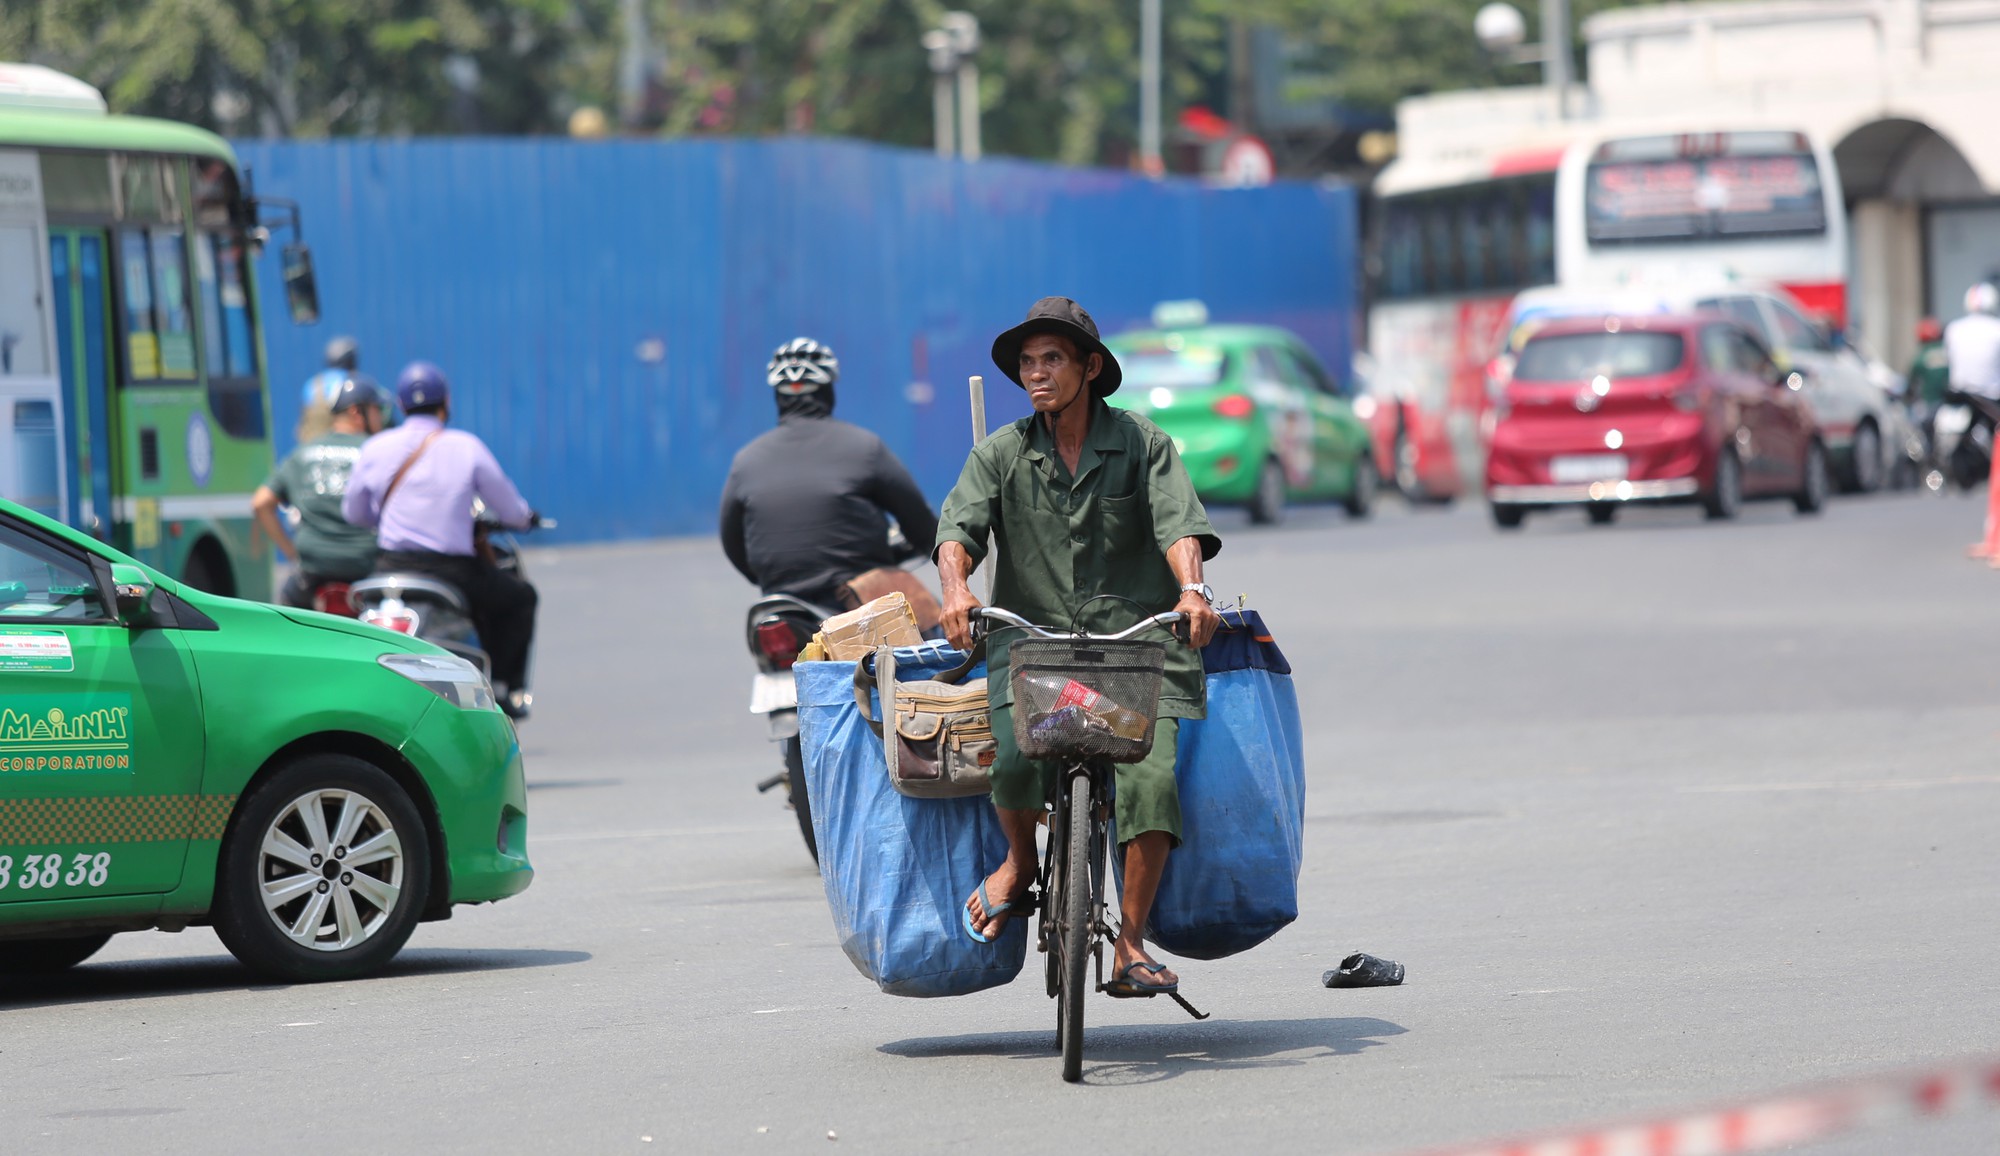 Nhiệt độ ở Sài Gòn lên đến 39 độ C, kéo dài đến tháng 5 - Ảnh 4.